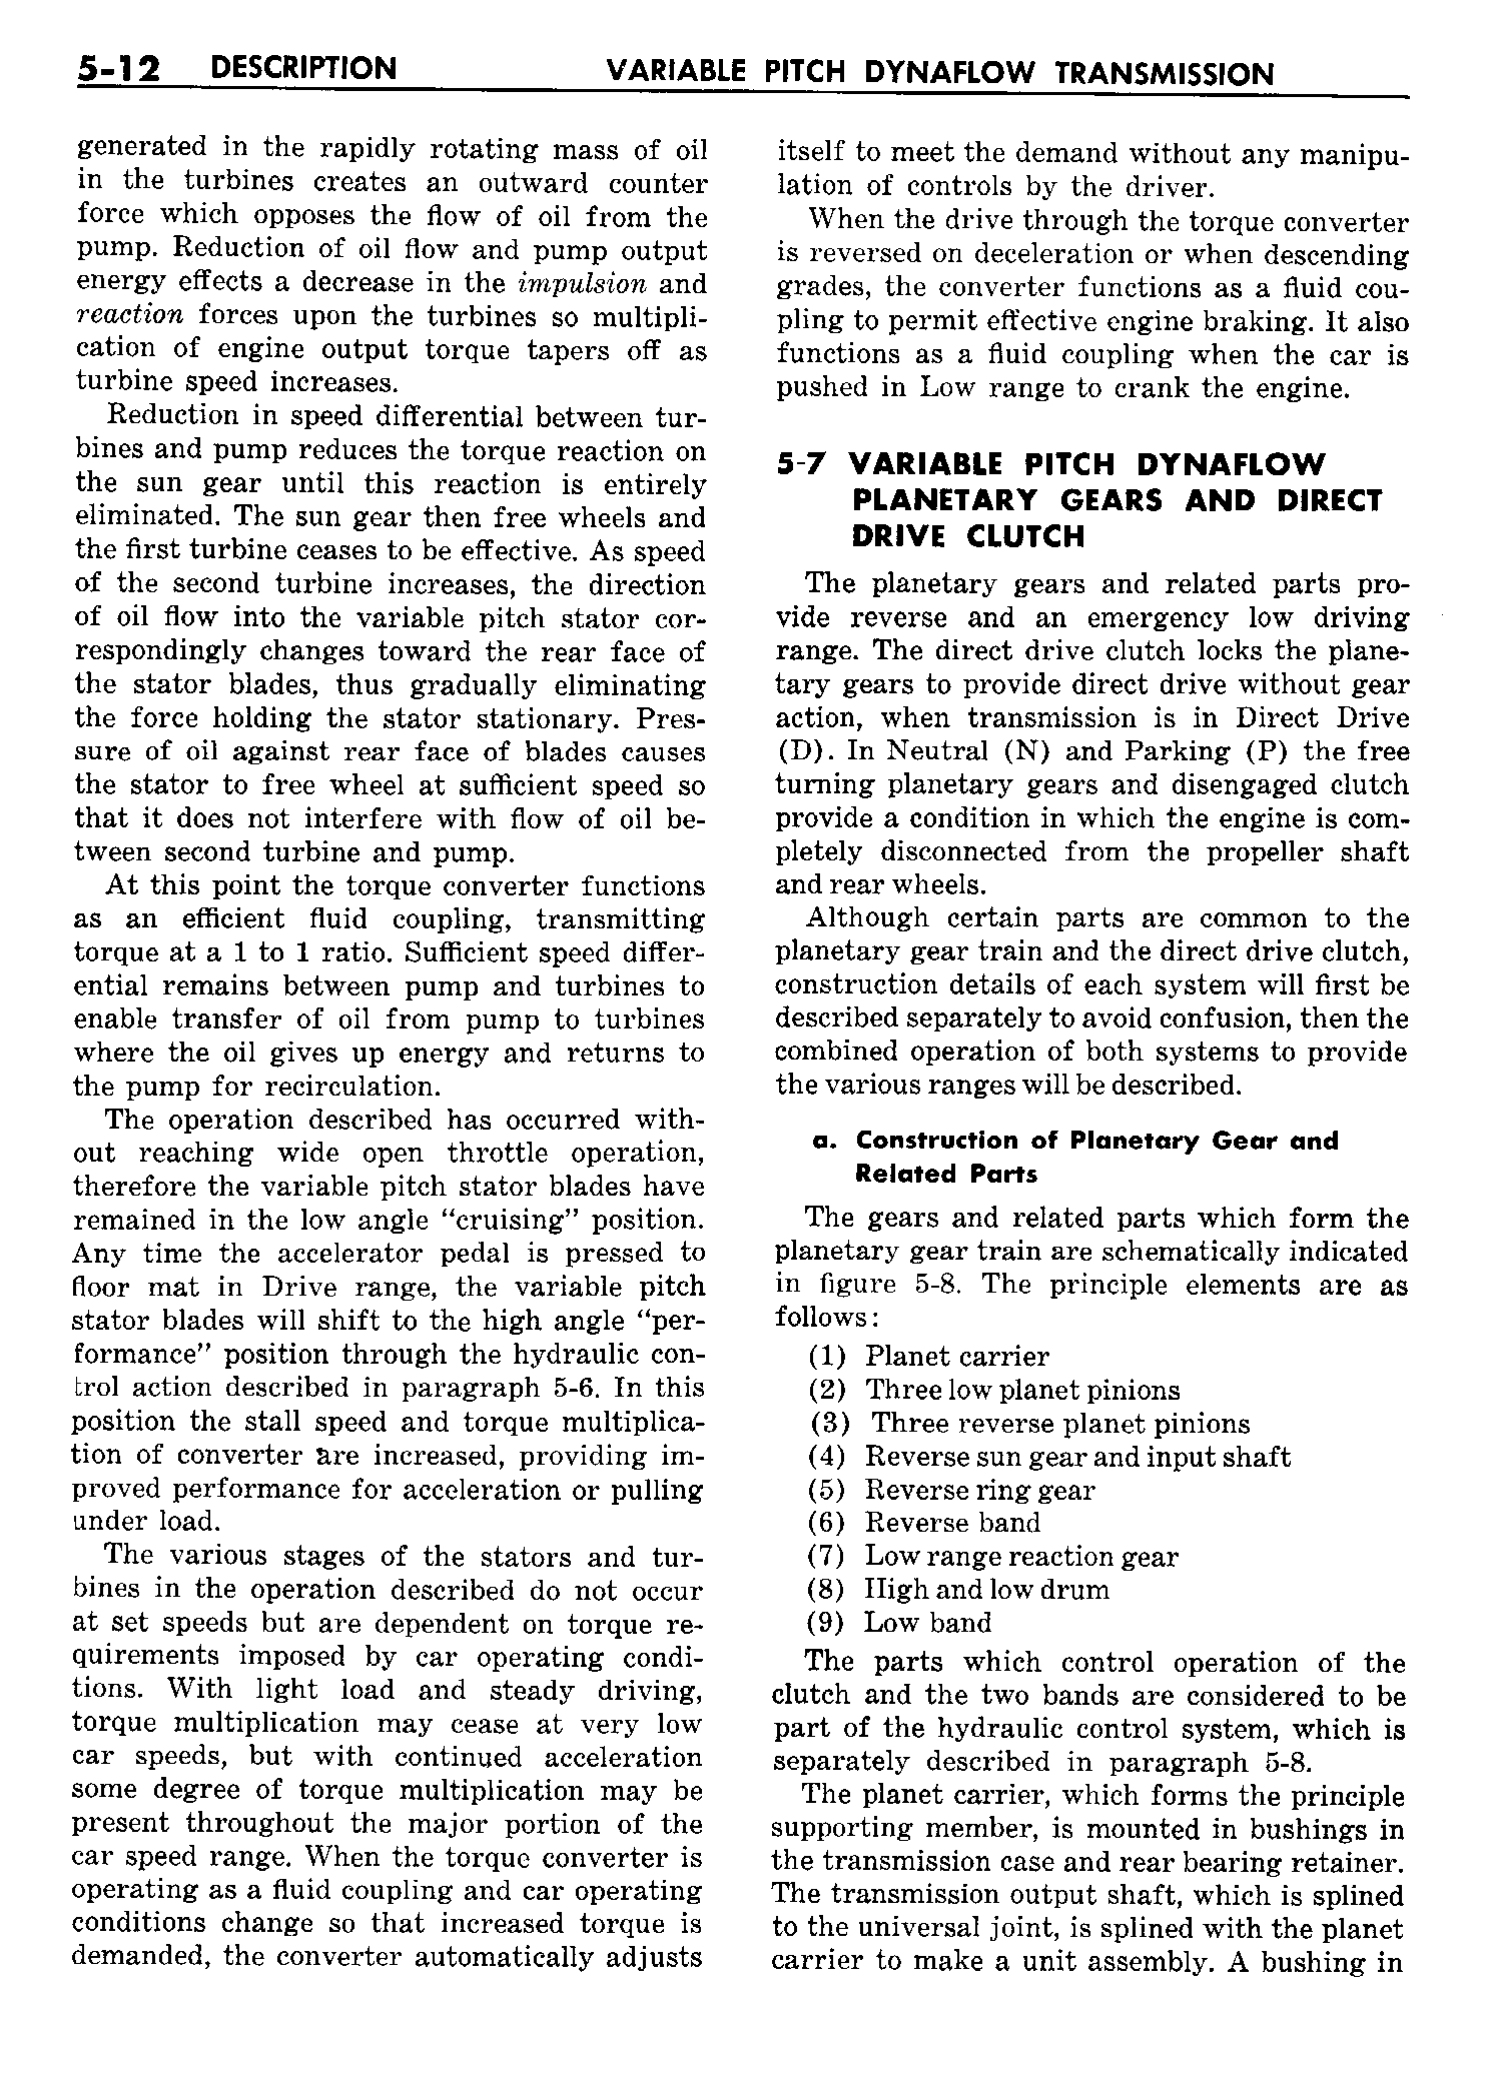 n_06 1958 Buick Shop Manual - Dynaflow_12.jpg